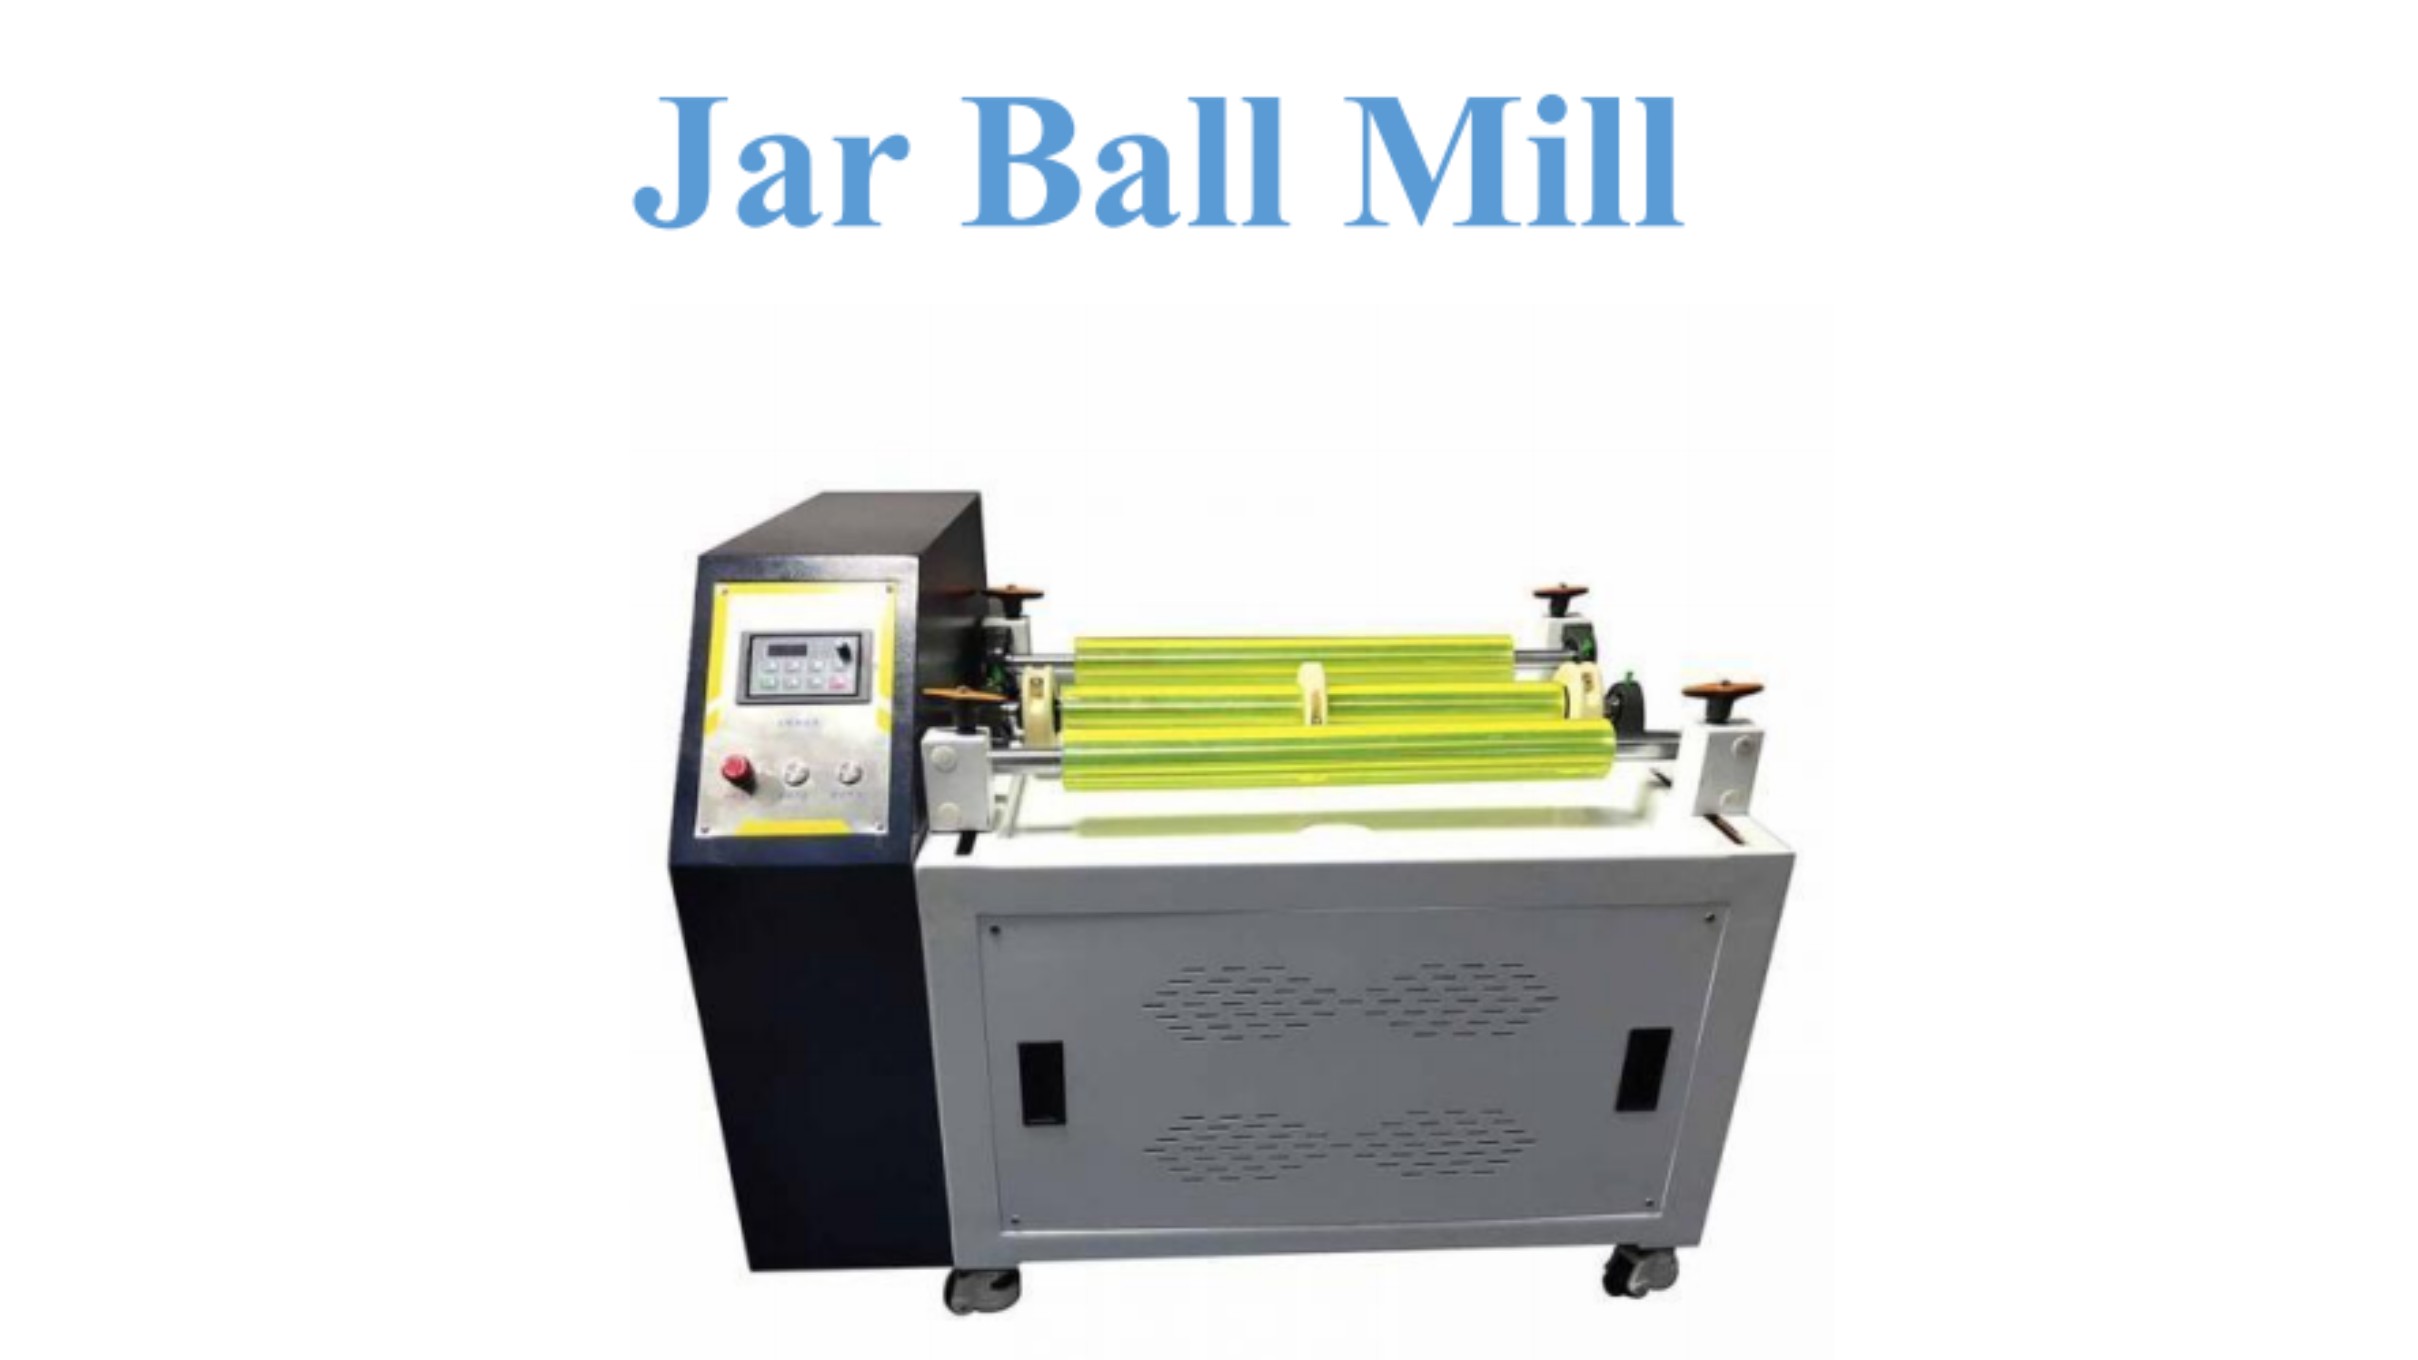 Jar Ball Mill